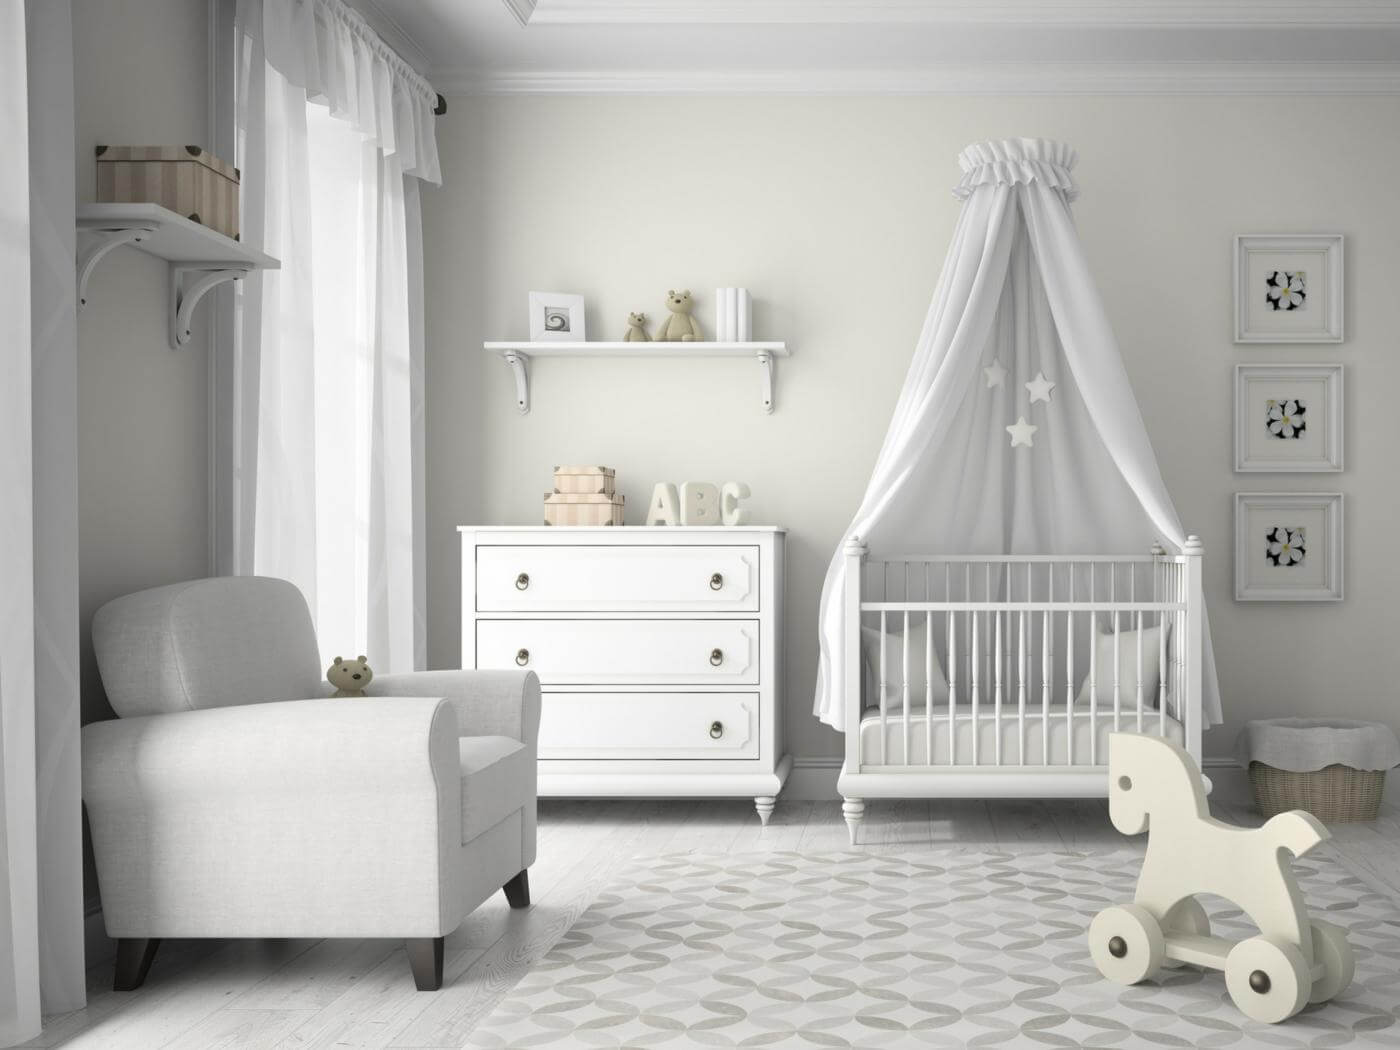 Как правильно оформить дизайн детской комнаты для новорожденного?